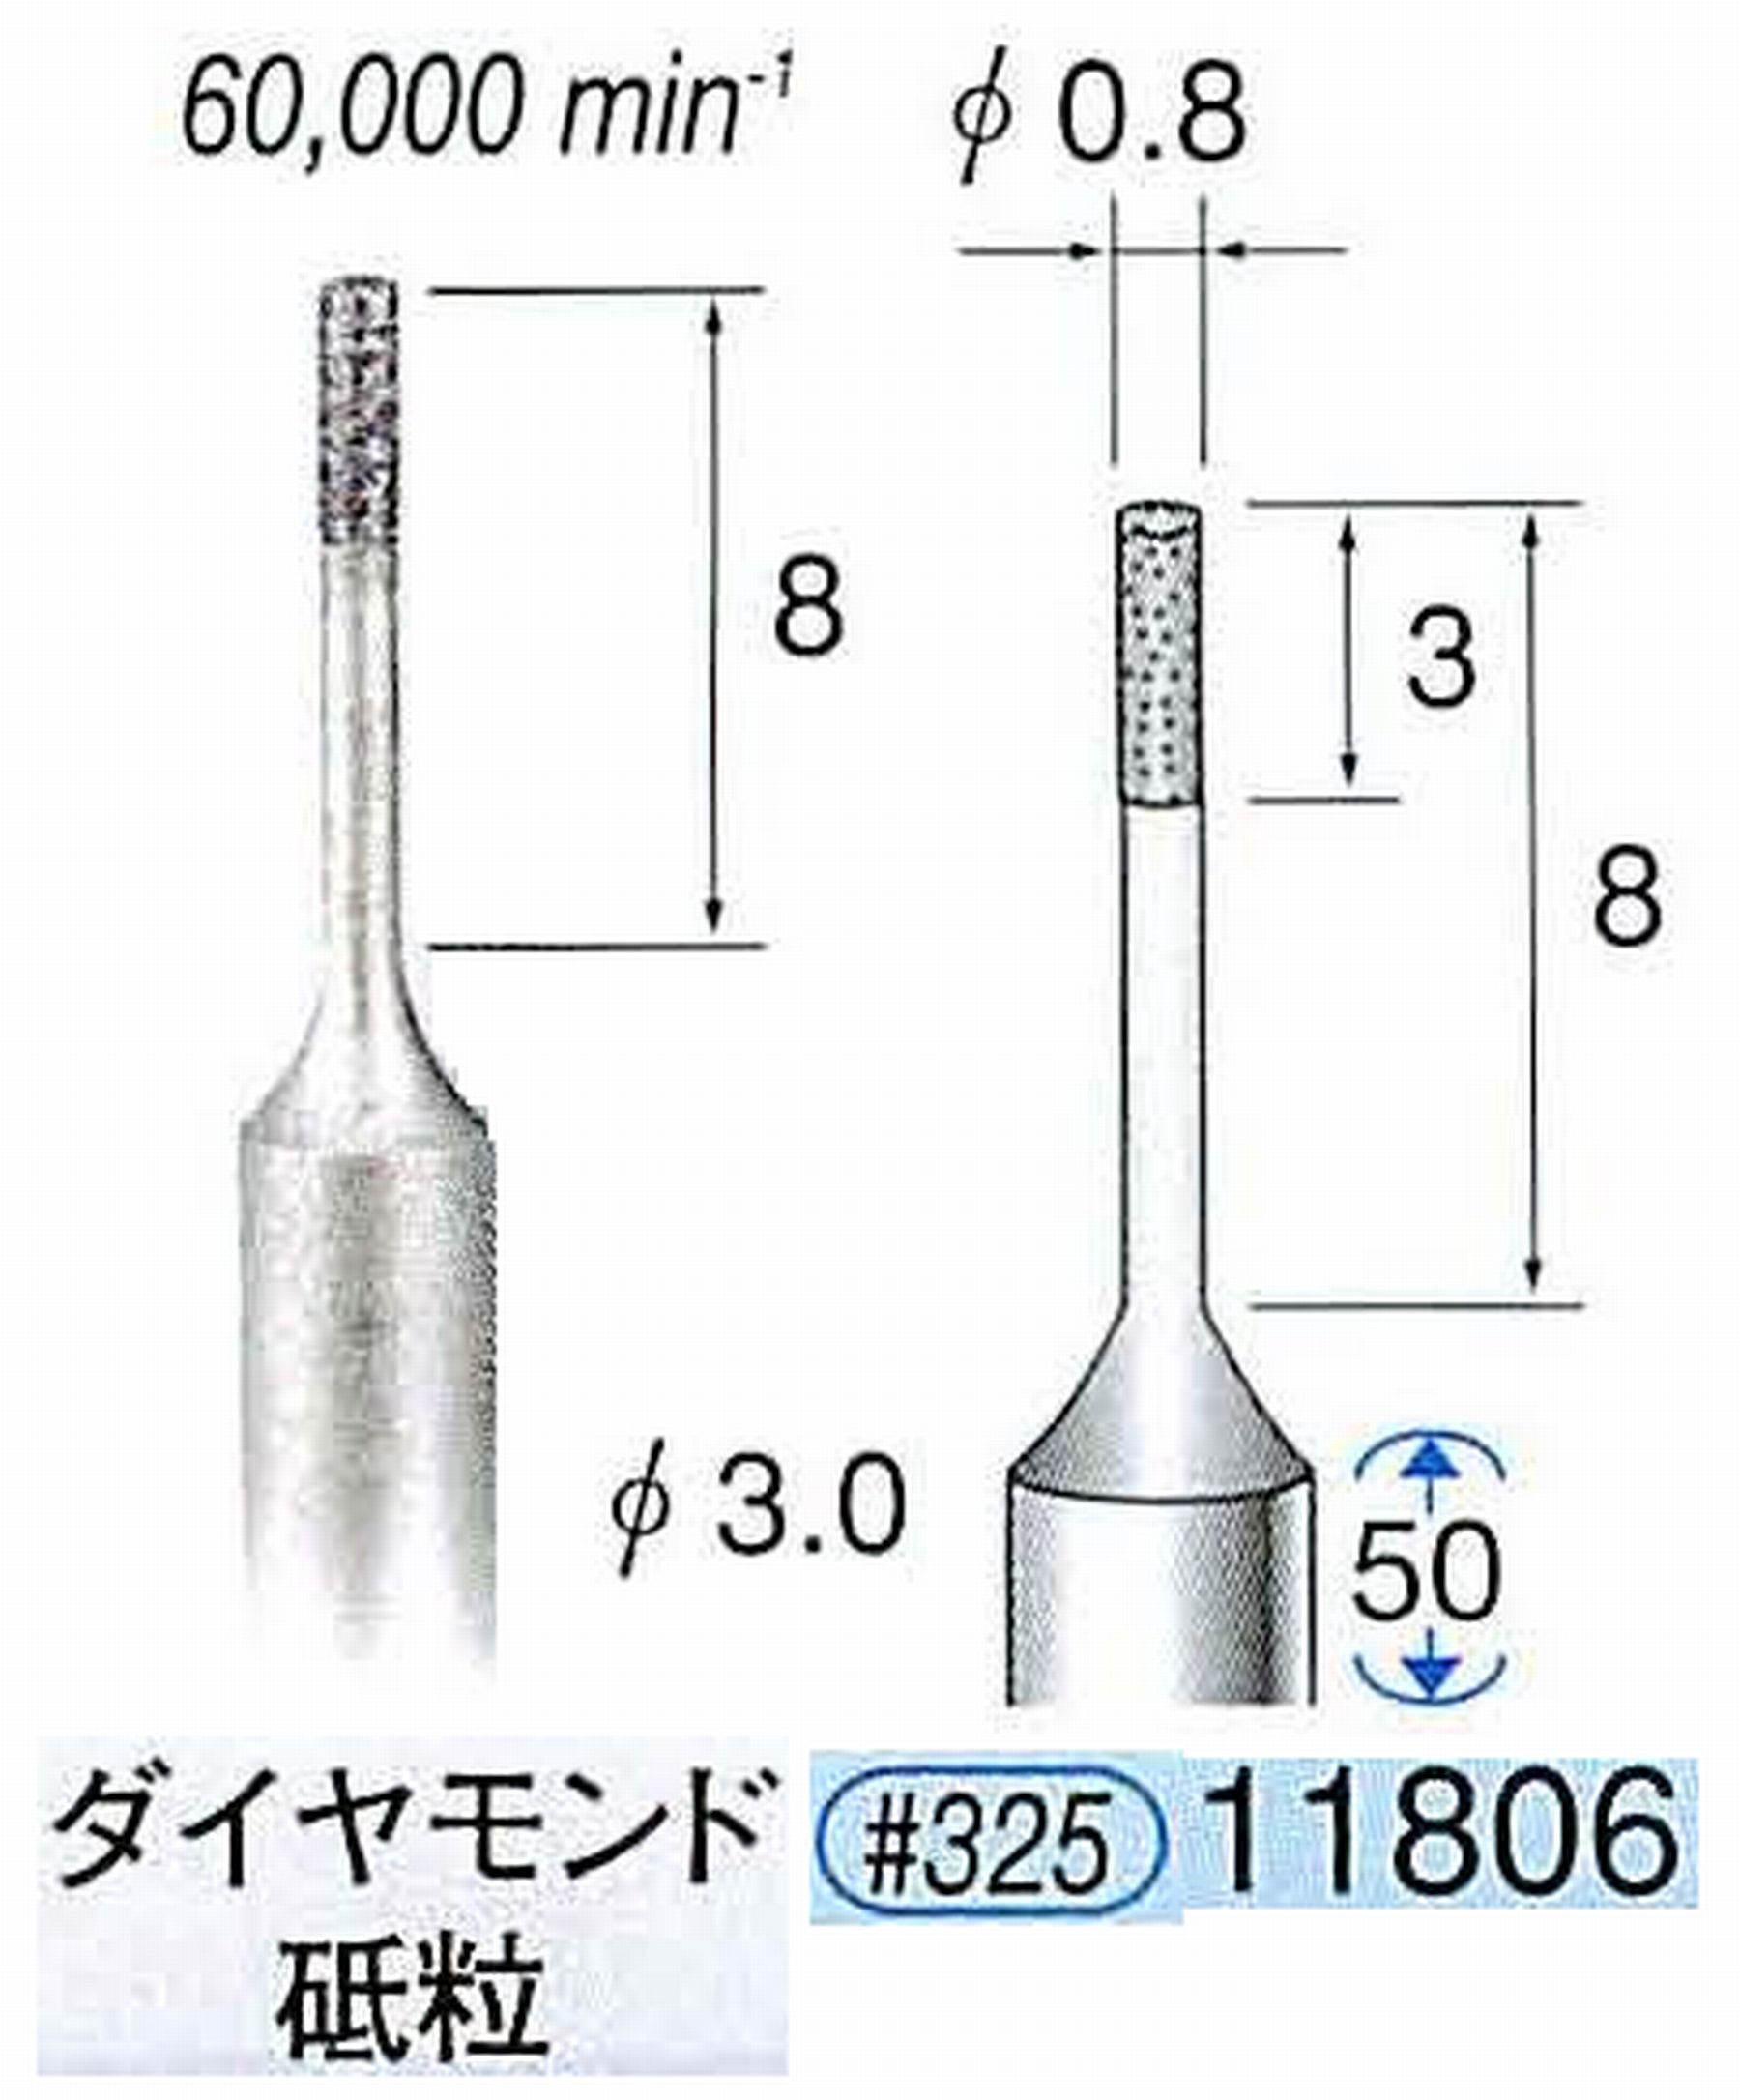 ナカニシ/NAKANISHI SP電着ダイヤモンド ダイヤモンド砥粒 軸径(シャンク)φ3.0mm 11806